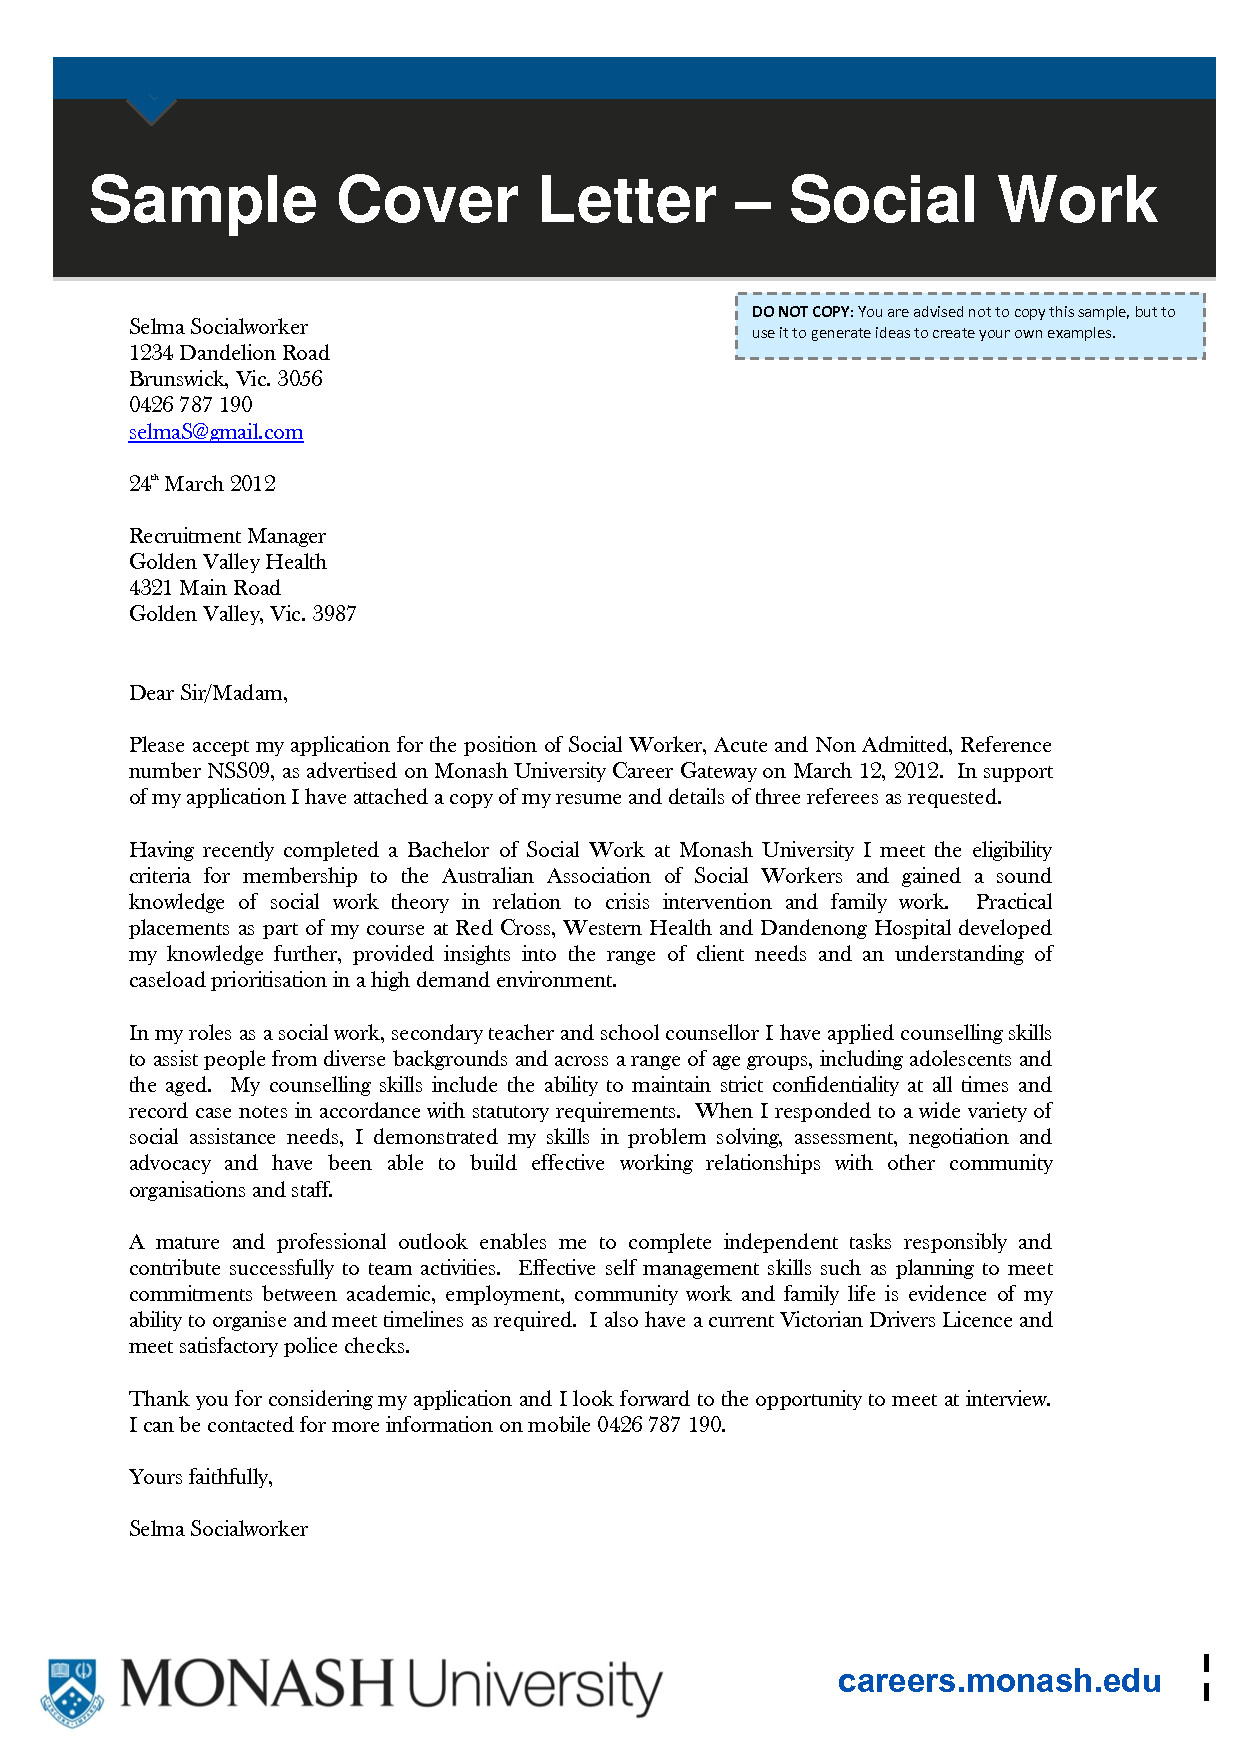 cover letter monash university